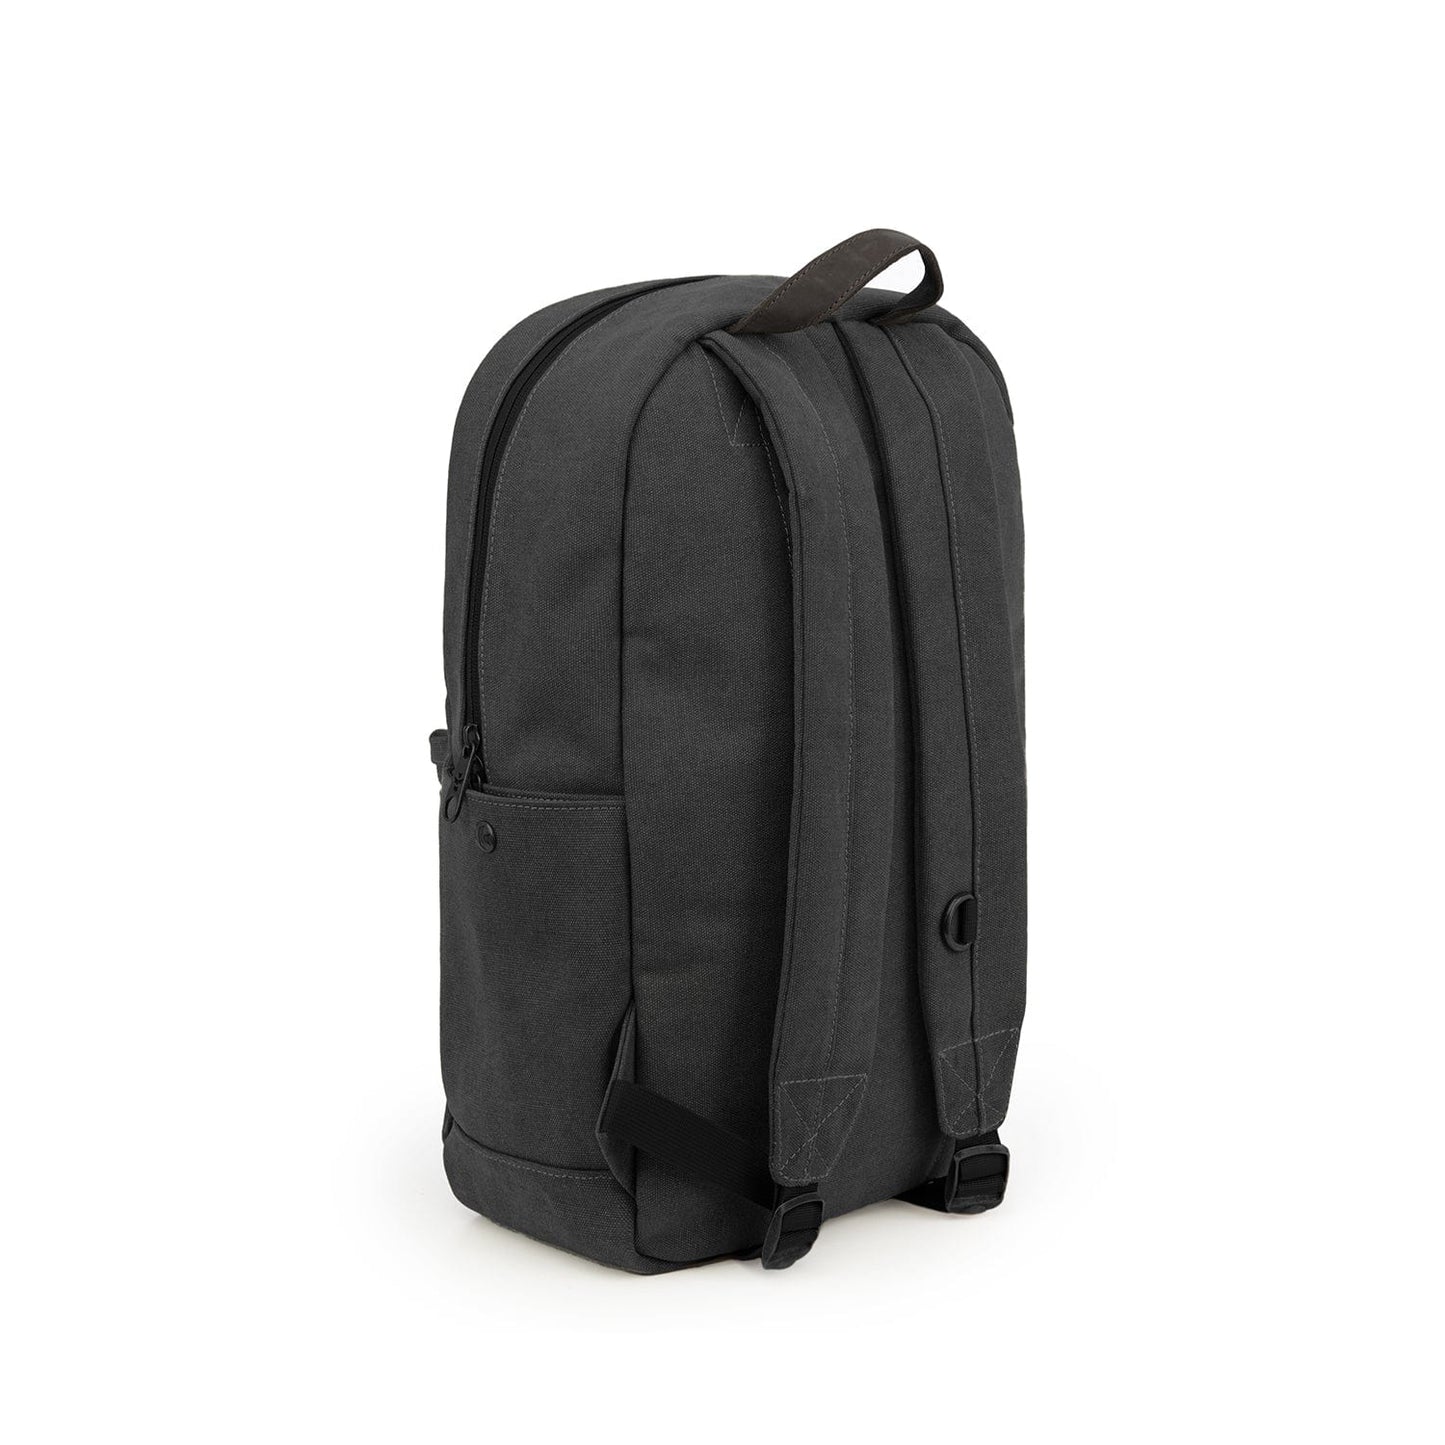 revelrysupply The Explorer - Smell Proof Backpack